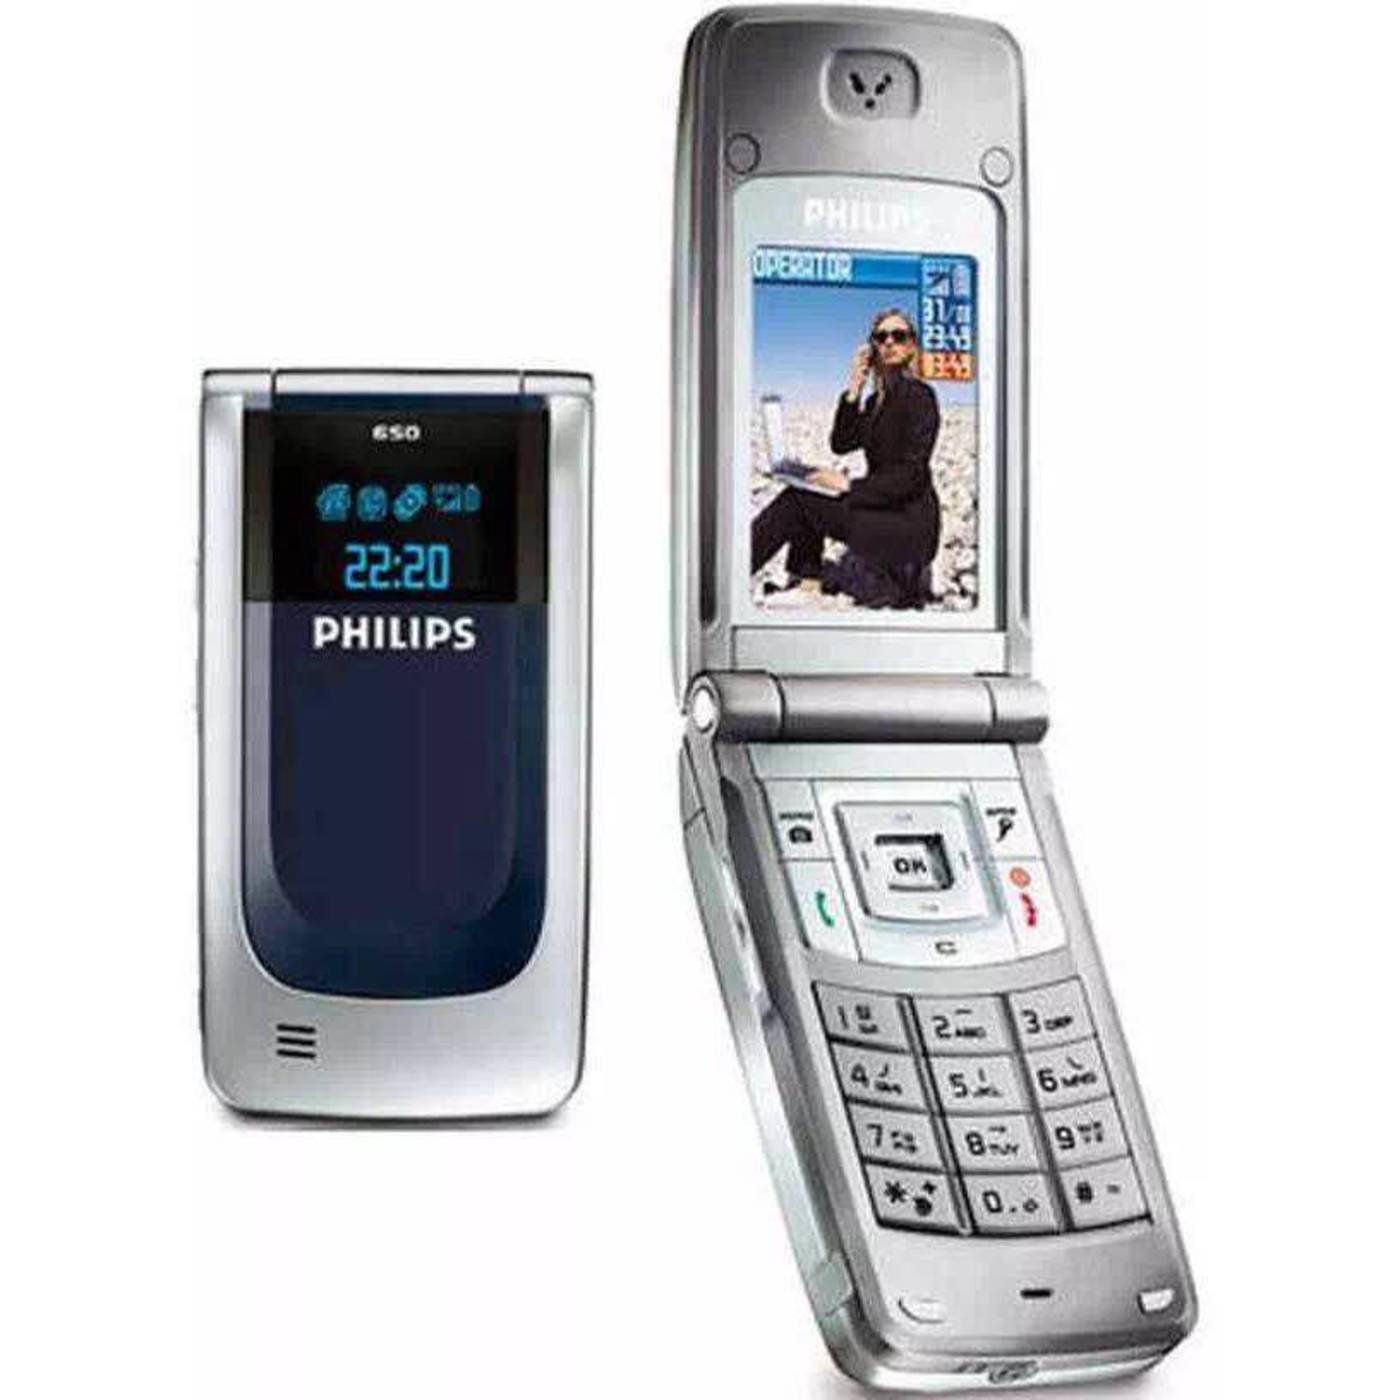 Телефон philips раскладушка. Филипс ксениум 9@9. Philips 650, Xenium 9@9c. Телефон Philips Xenium 9@9i. Philips Xenium раскладушка 9@9i.